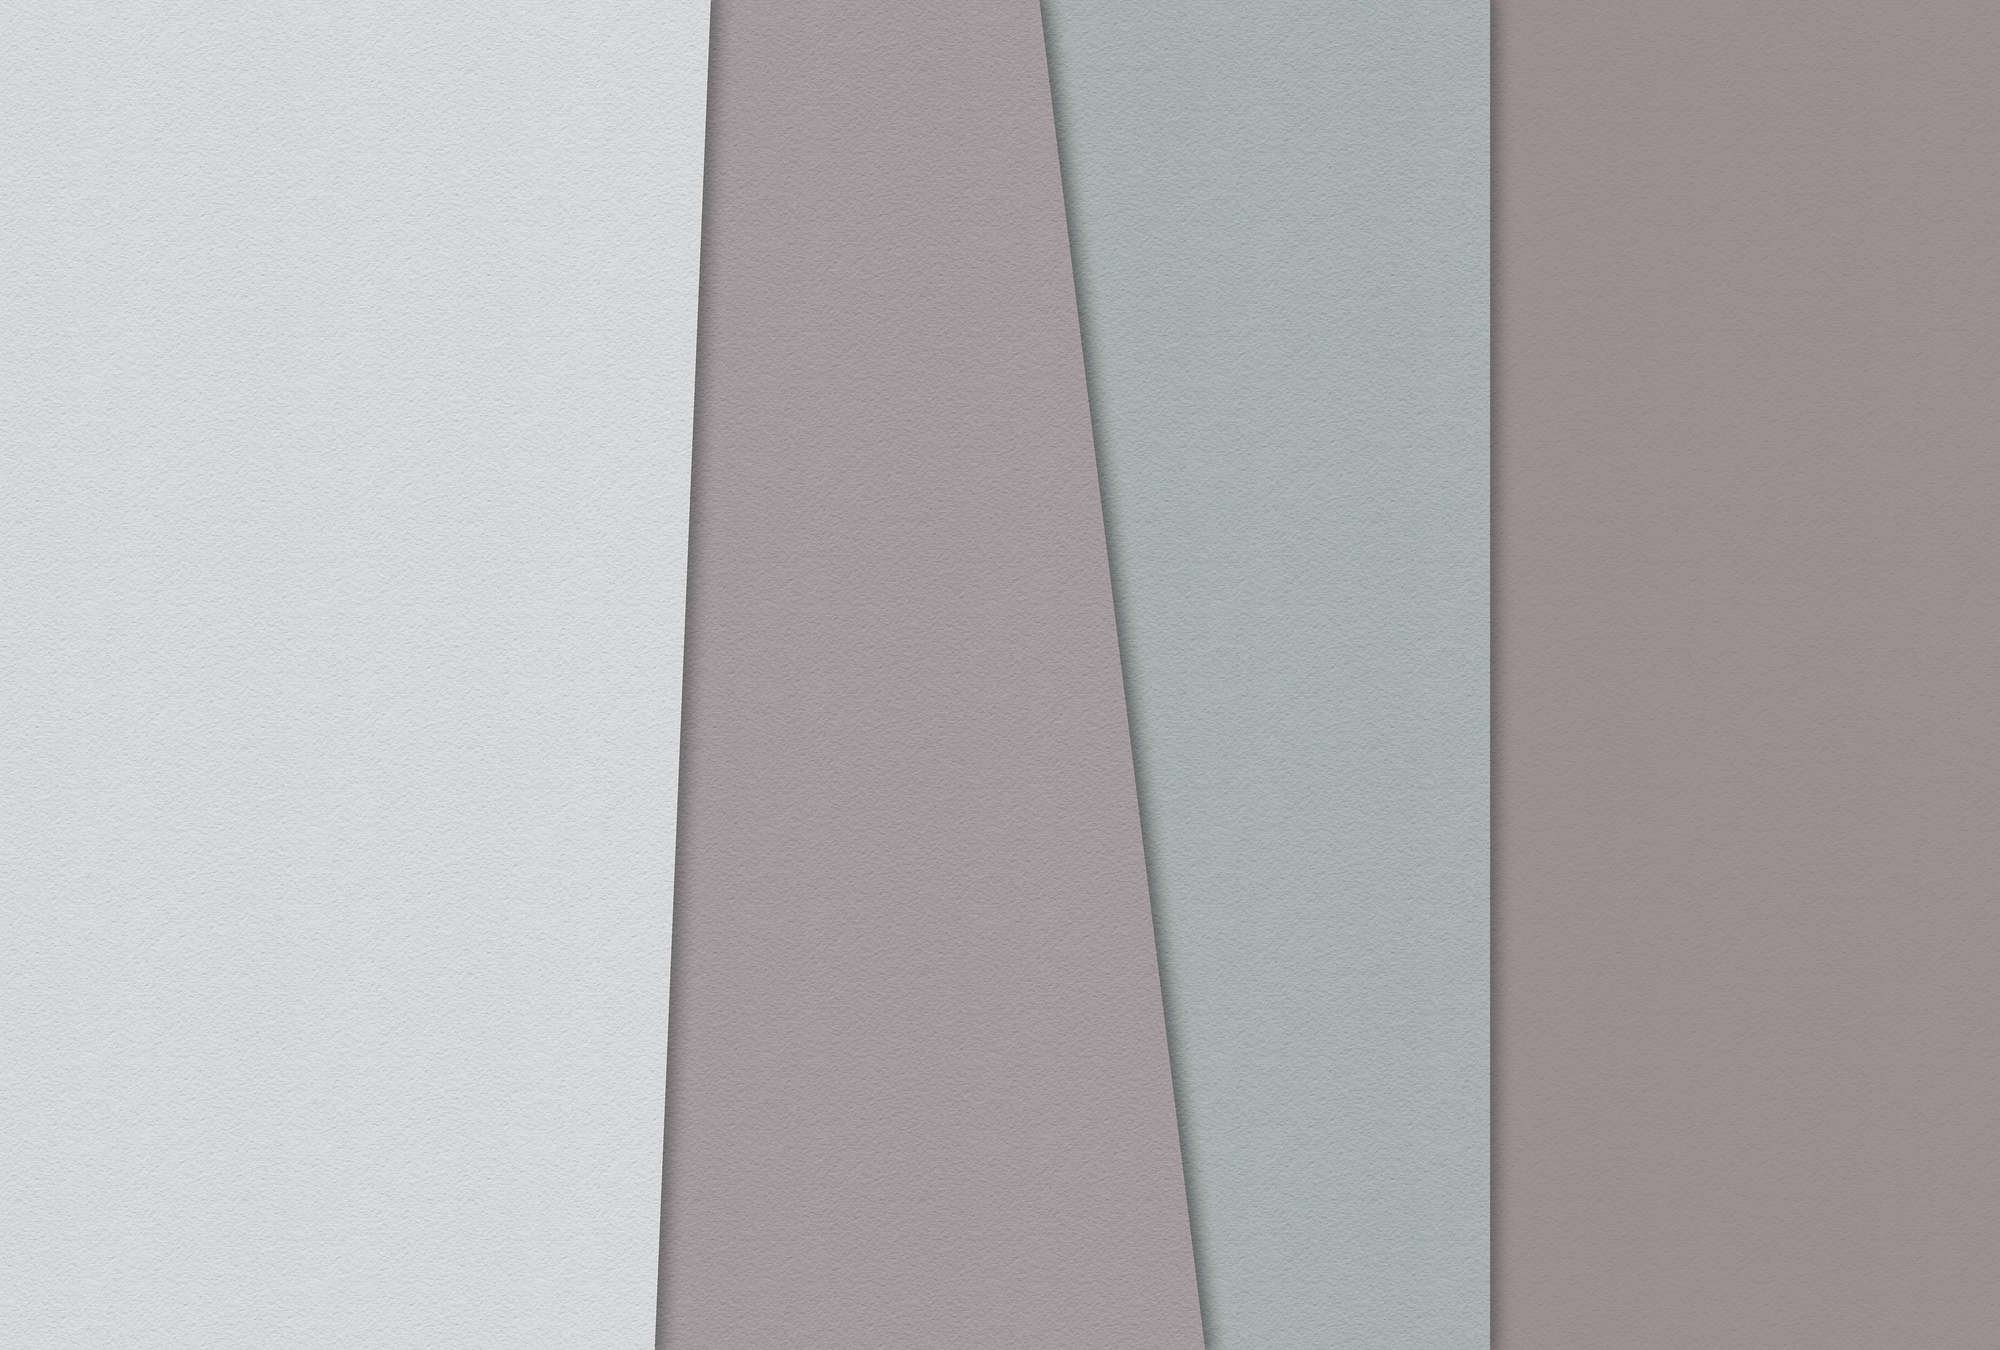             Gelaagd papier 3 - Minimalistisch Onderlaag behang Kleurvlakken Handgemaakt Papier behang Textuur - Blauw, Crème | Pearl Smooth Vliesbehang
        